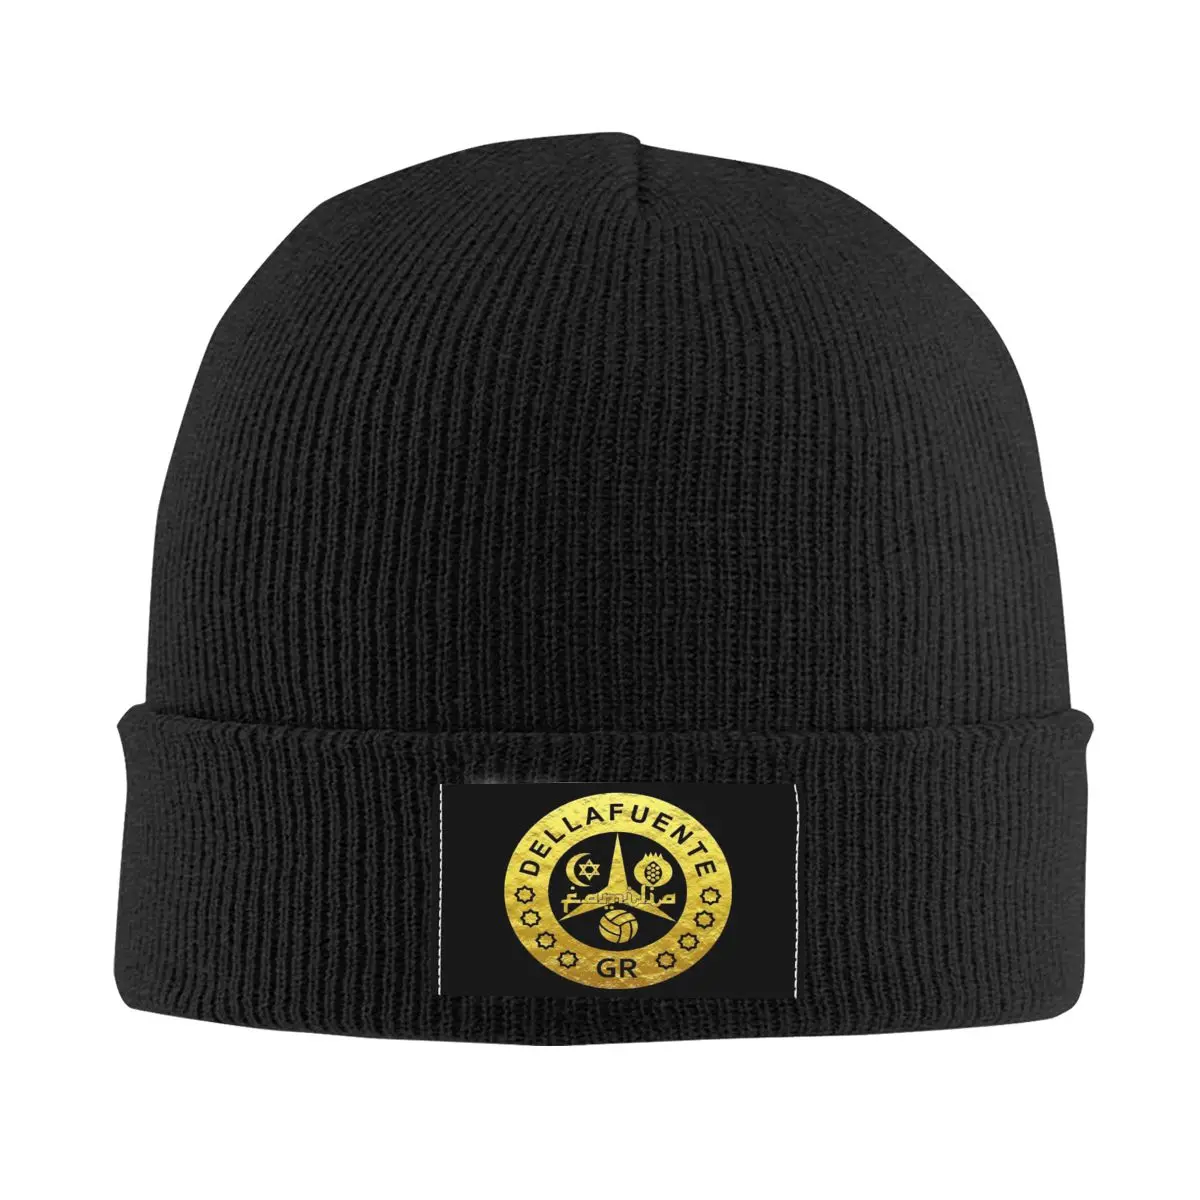 Dellafuente FC Artwork Bonnet Hats Street Knitted Hat For Men Women Winter Warm Skullies Beanies Caps 1